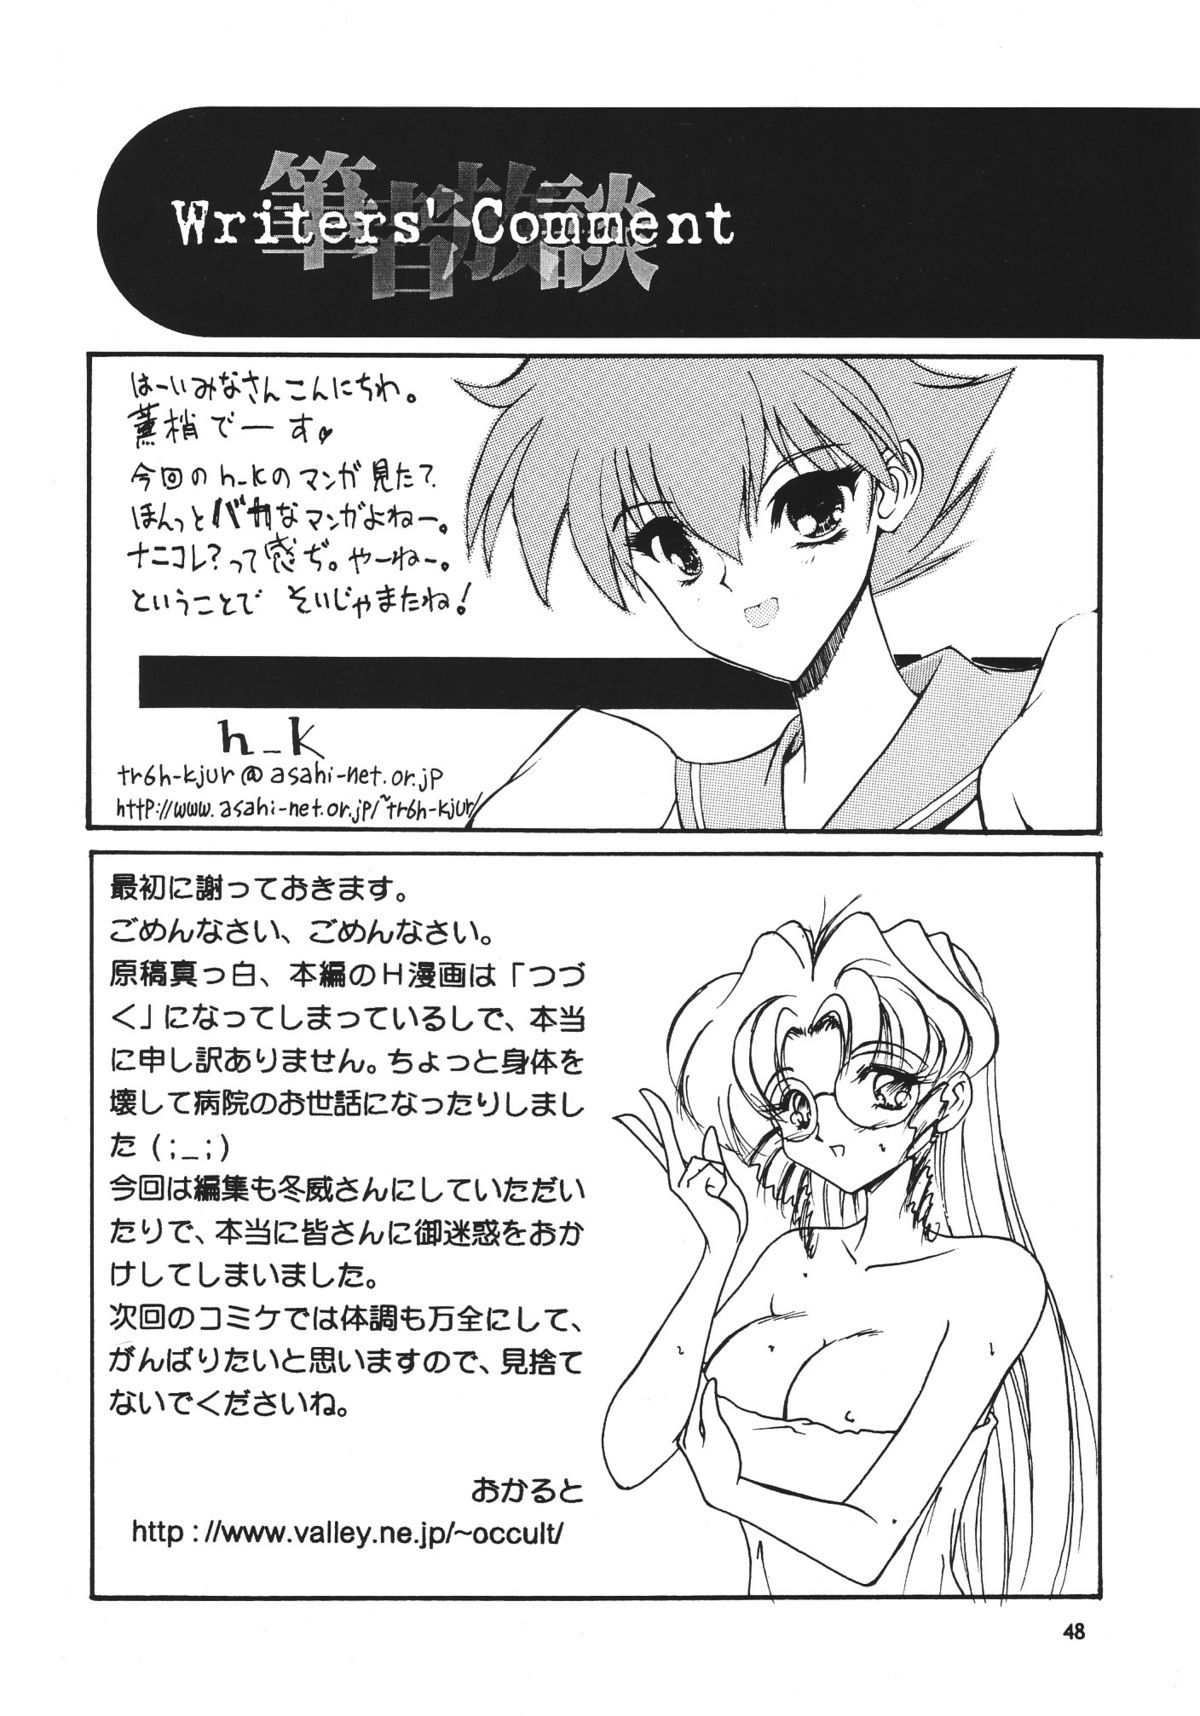 [Seishun No Nigirikobushi!] Favorite Visions 2 (Sailor Moon, AIKa) page 50 full